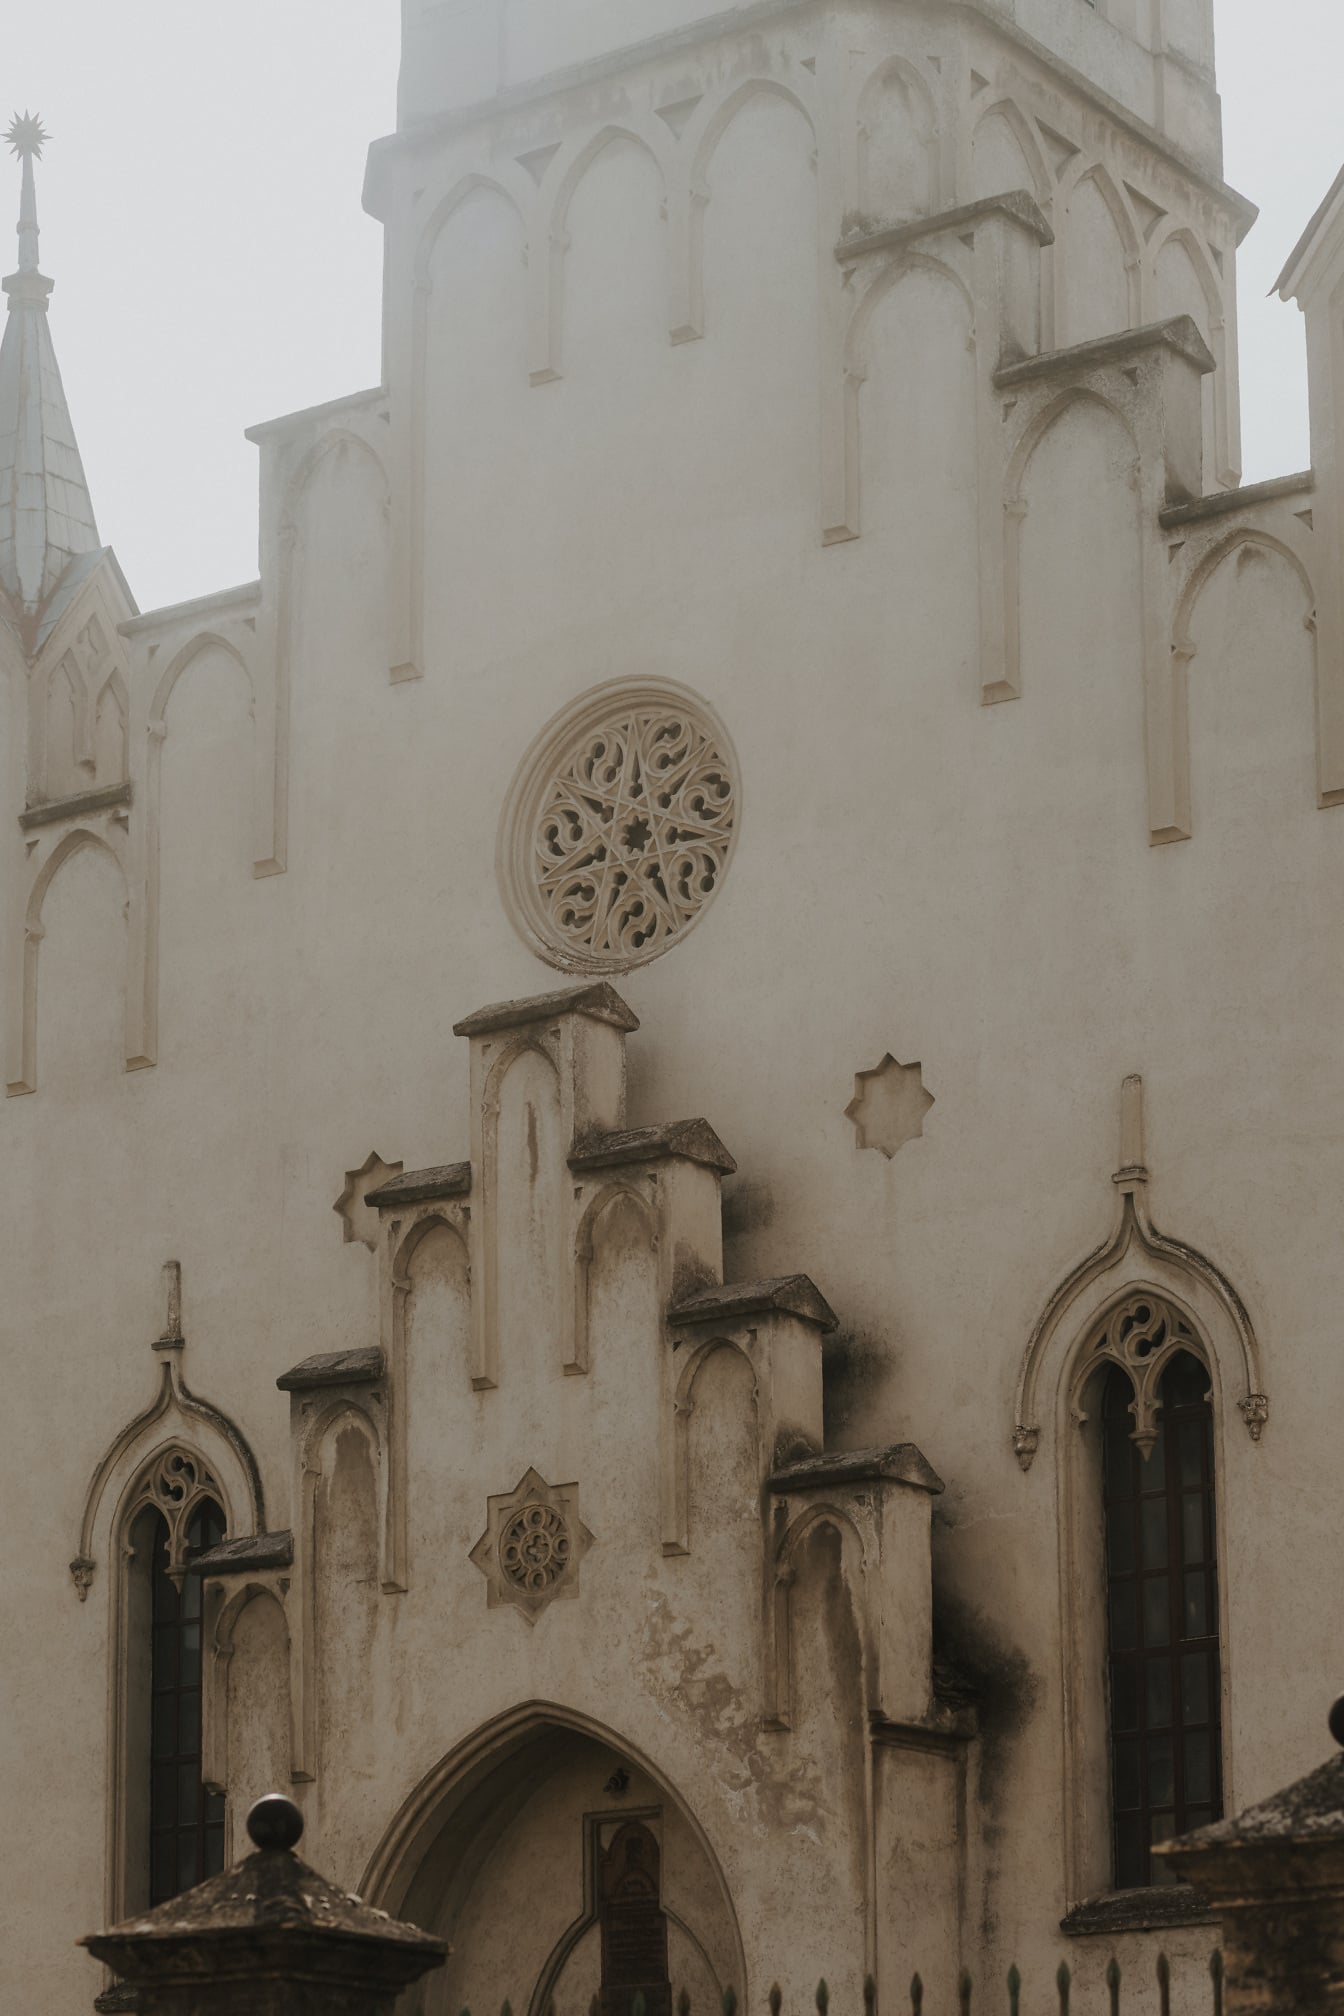 Régi katolikus fehér templom kődíszekkel a falon